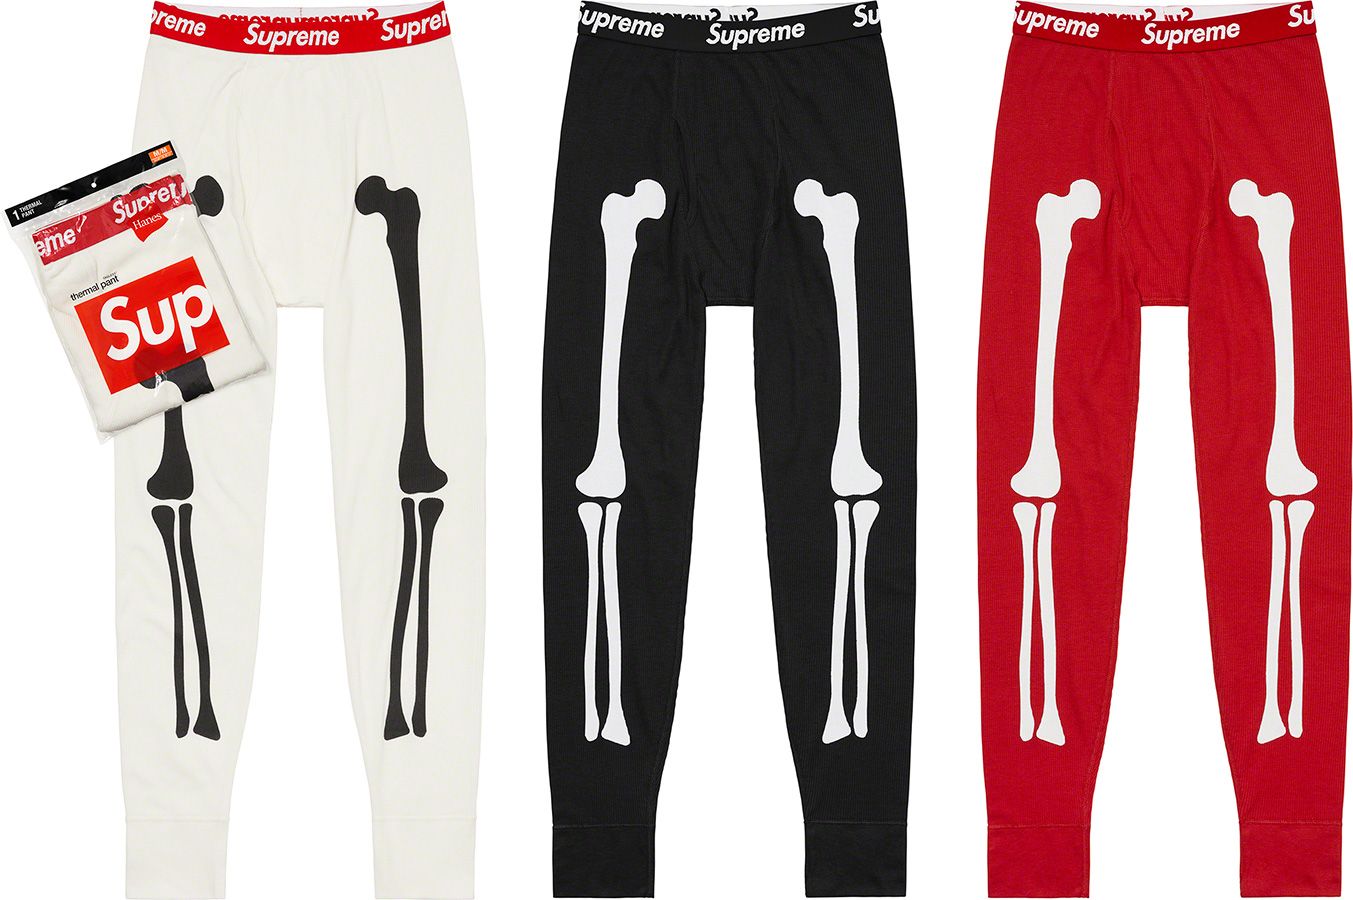 Supreme®/Hanes® Bones Thermal Pant (1 Pack) - Fall/Winter 2021 